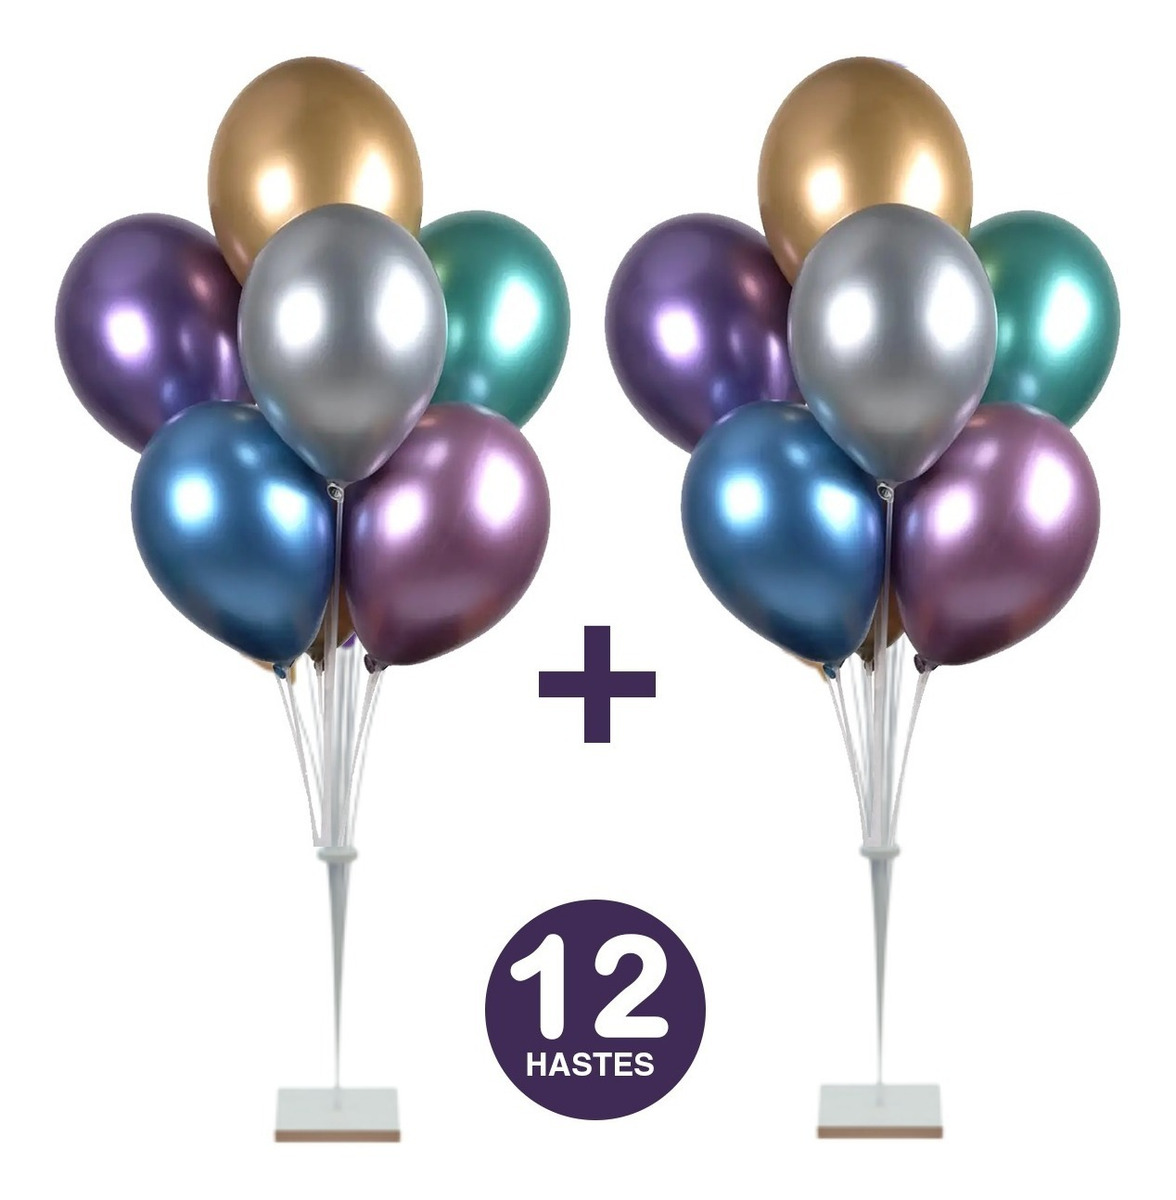 Kit 02 Suportes de Balão Bexiga Bolas de 12 Hastes C/ 1,20cm Grande de Chão Para Festas Decoração Aniversário - Imagem 1